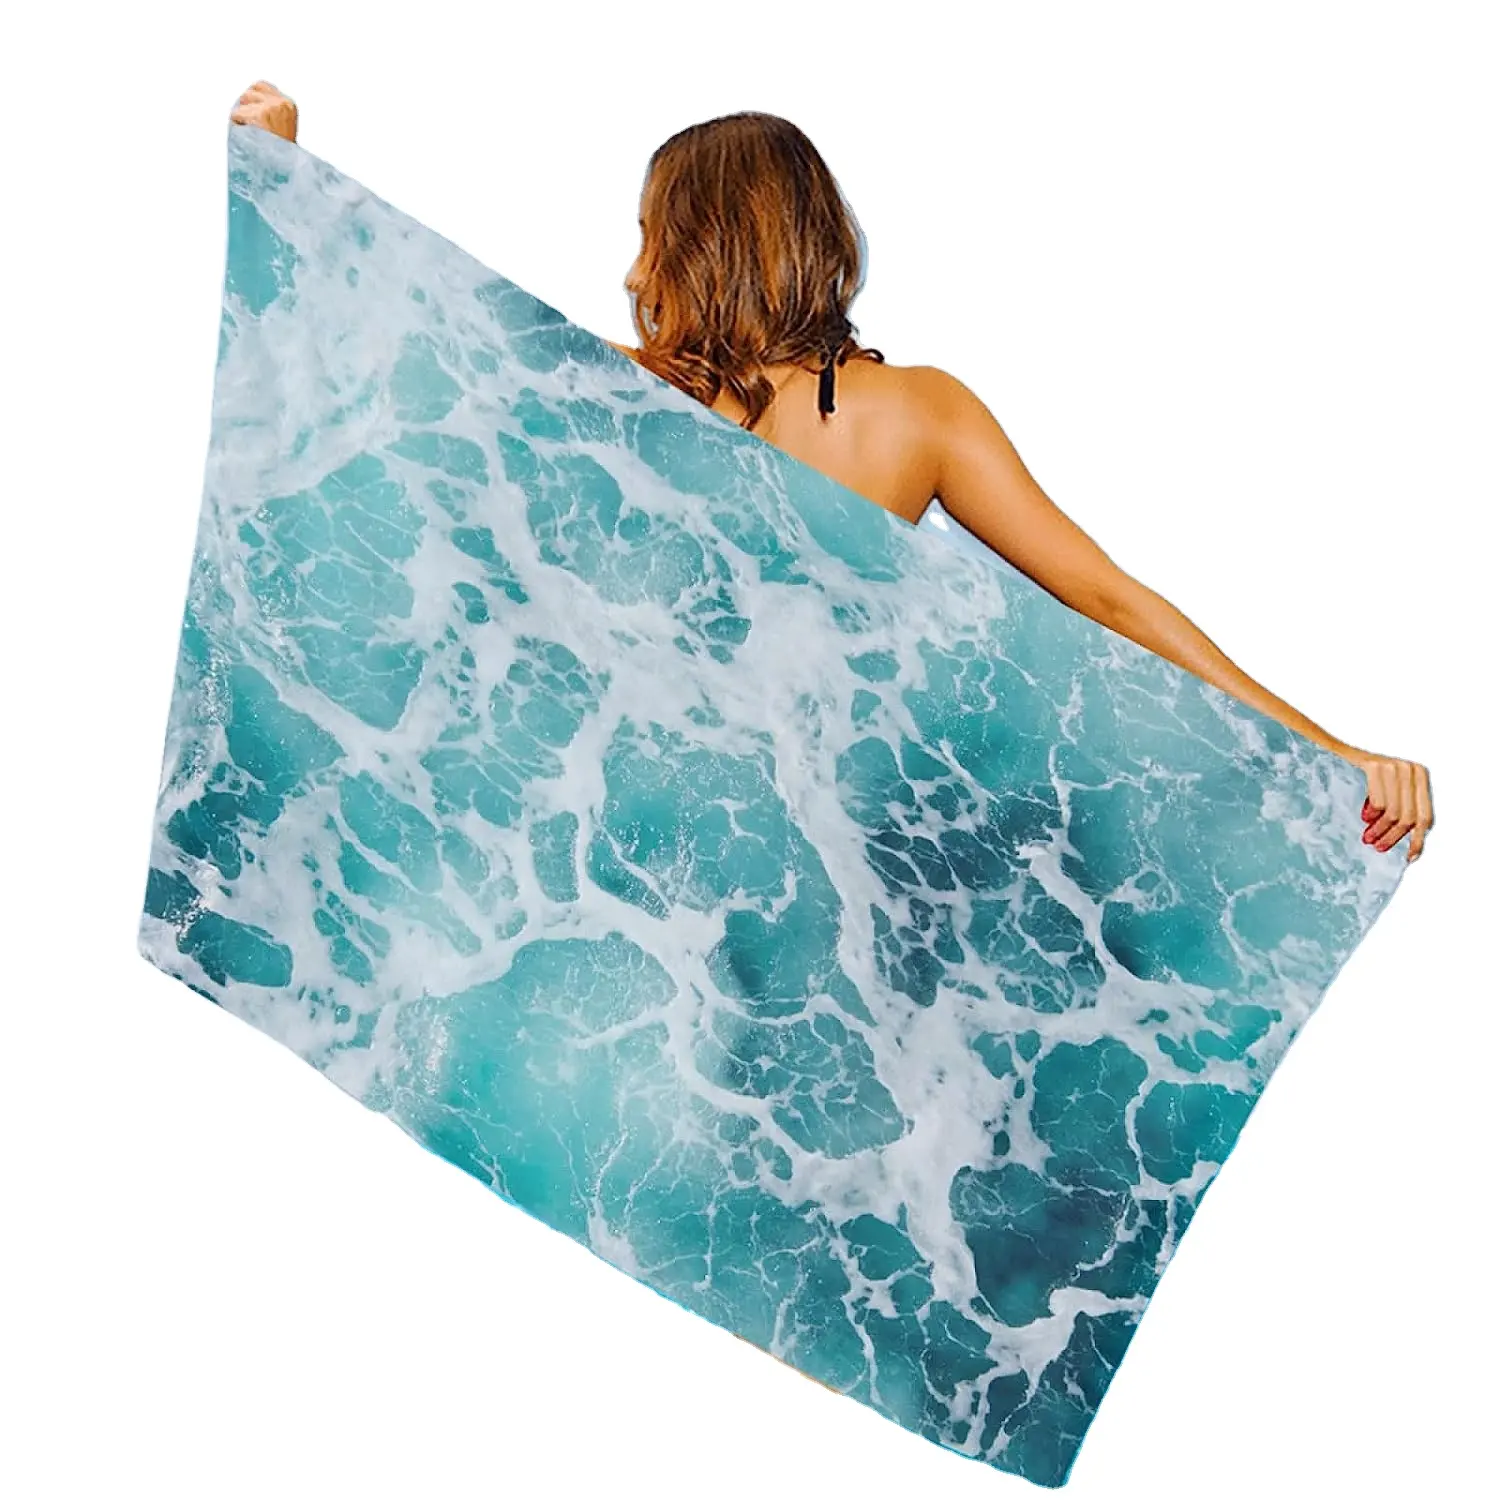 कस्टम प्रिंट जल्दी शुष्क यात्रा काम करता है गर्म बेचने गर्मियों में oversized समुद्र तट तौलिया मुद्रित रेत मुफ्त Microfiber के समुद्र तट तौलिया